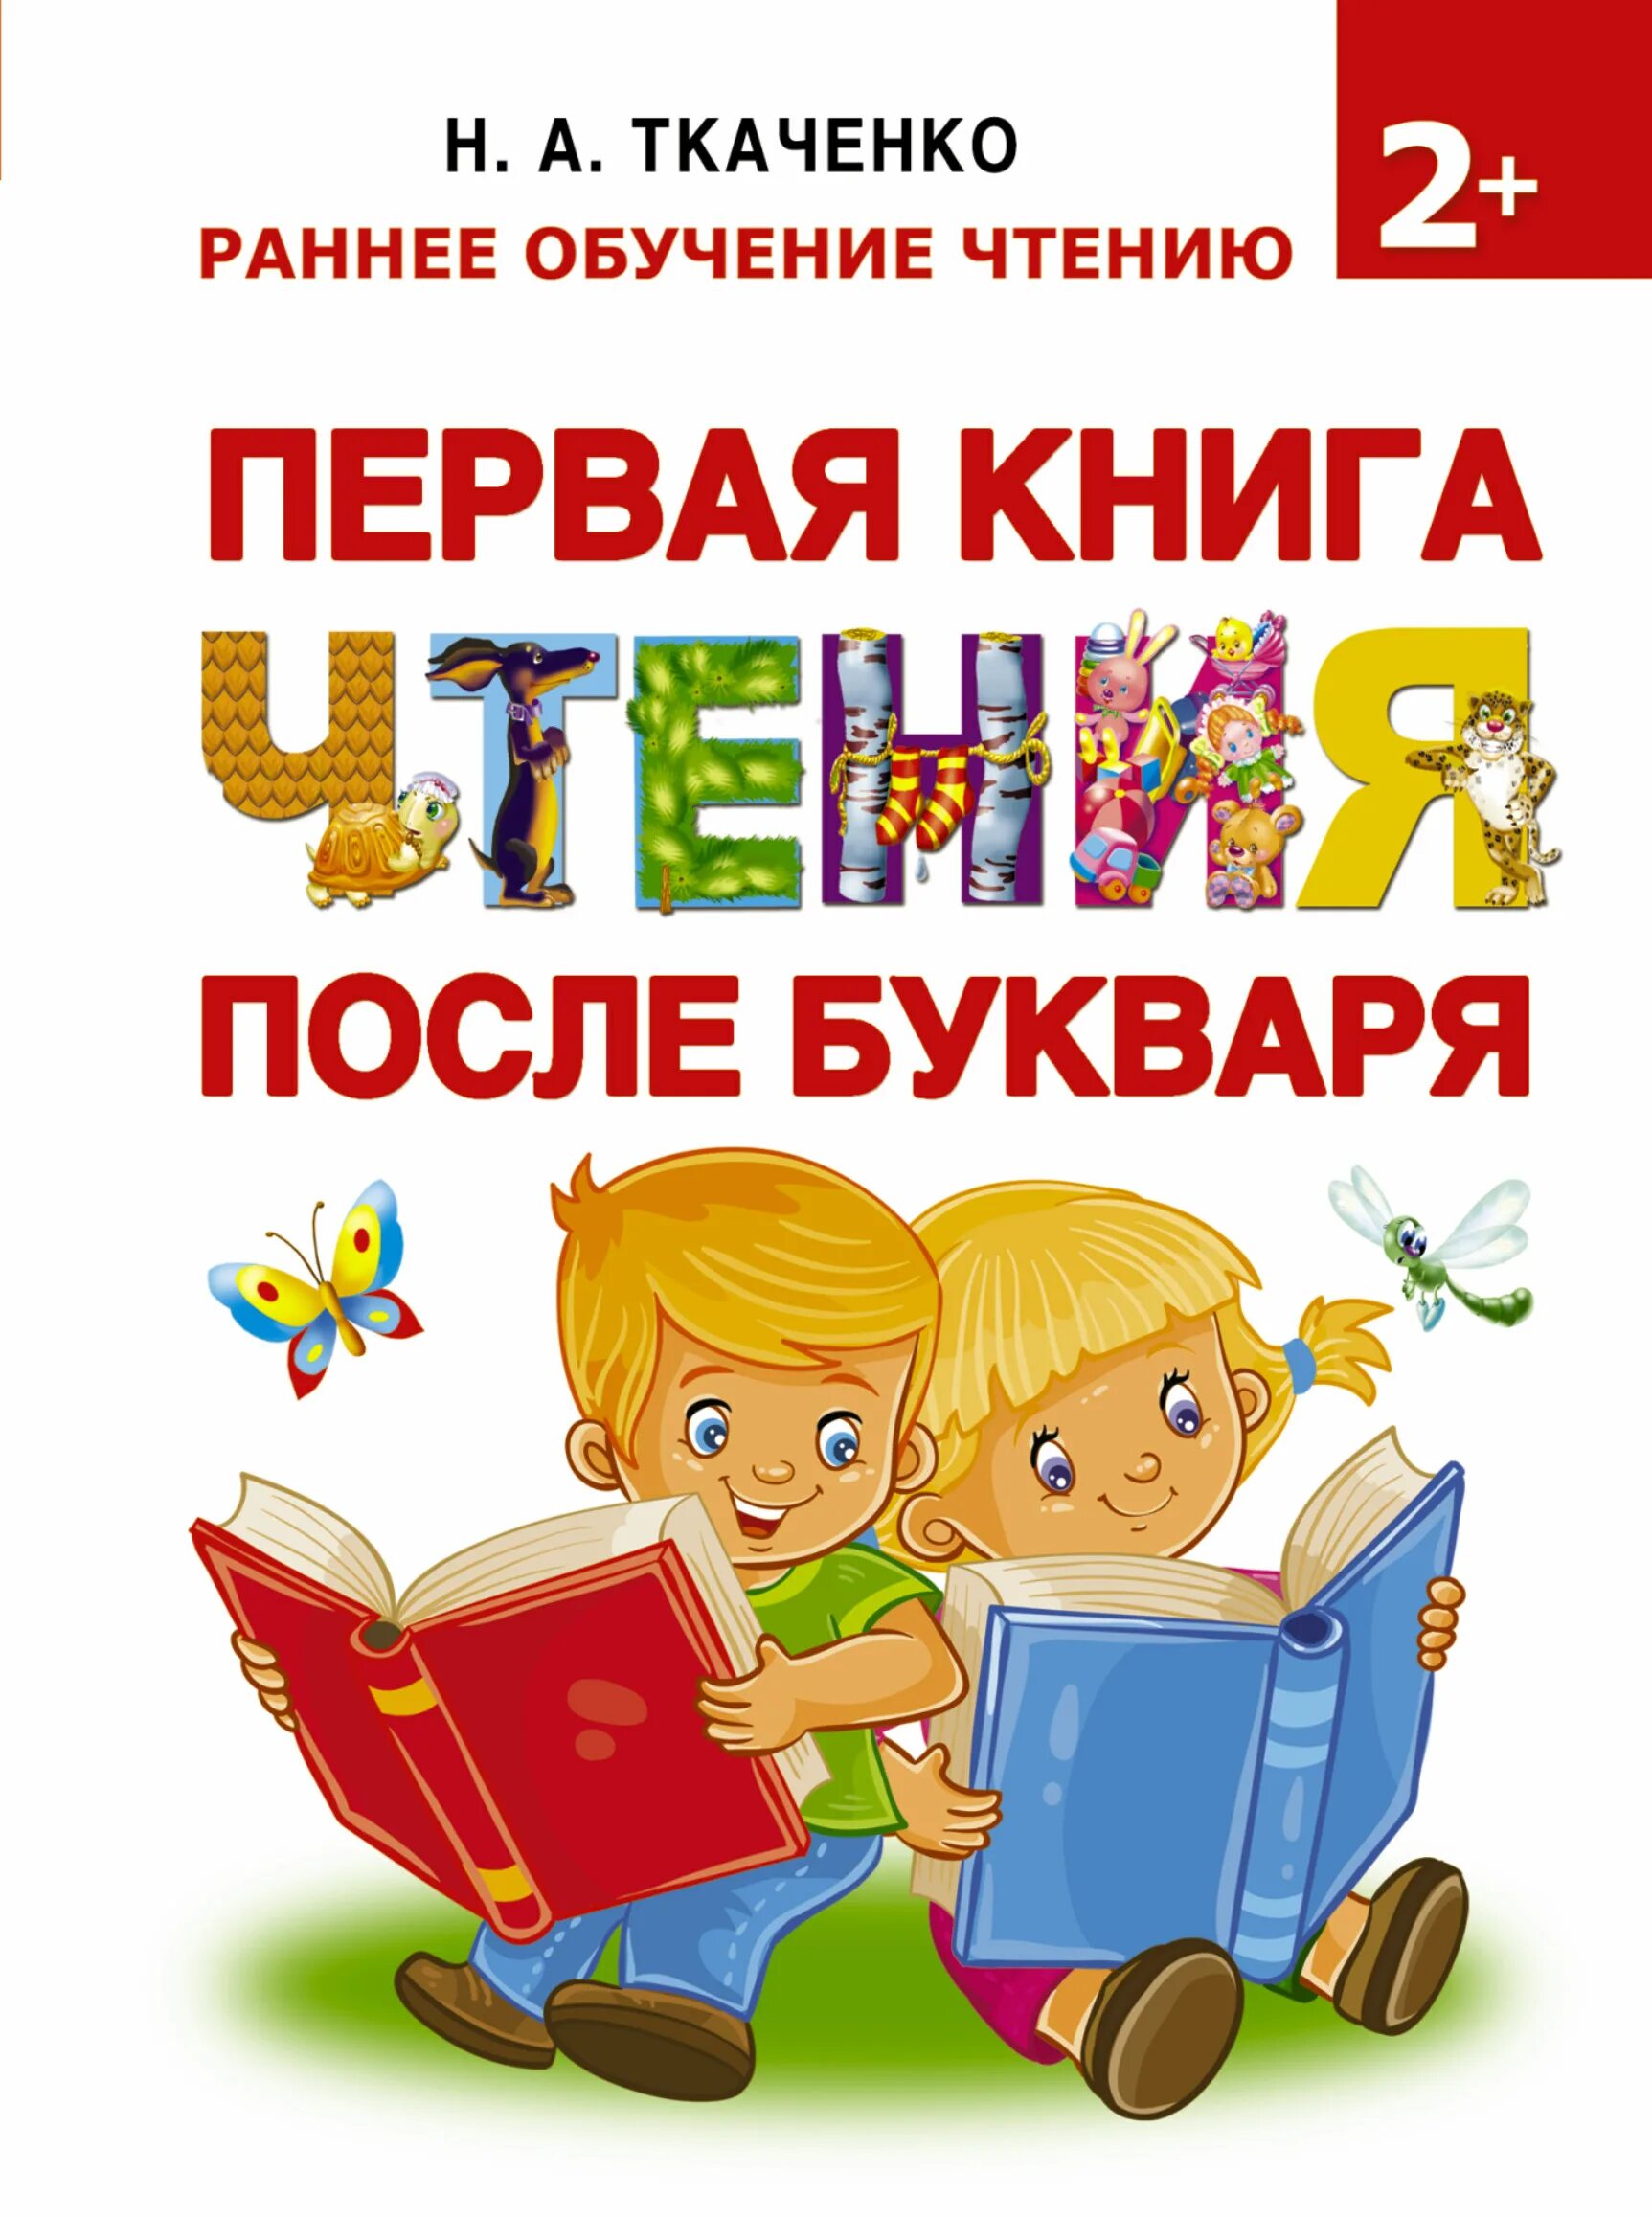 Москва первое чтение. Книга для чтения для дошкольников. Книга для чтения после букваря. Обложка книги для детей. Книга для обучения чтению детей.